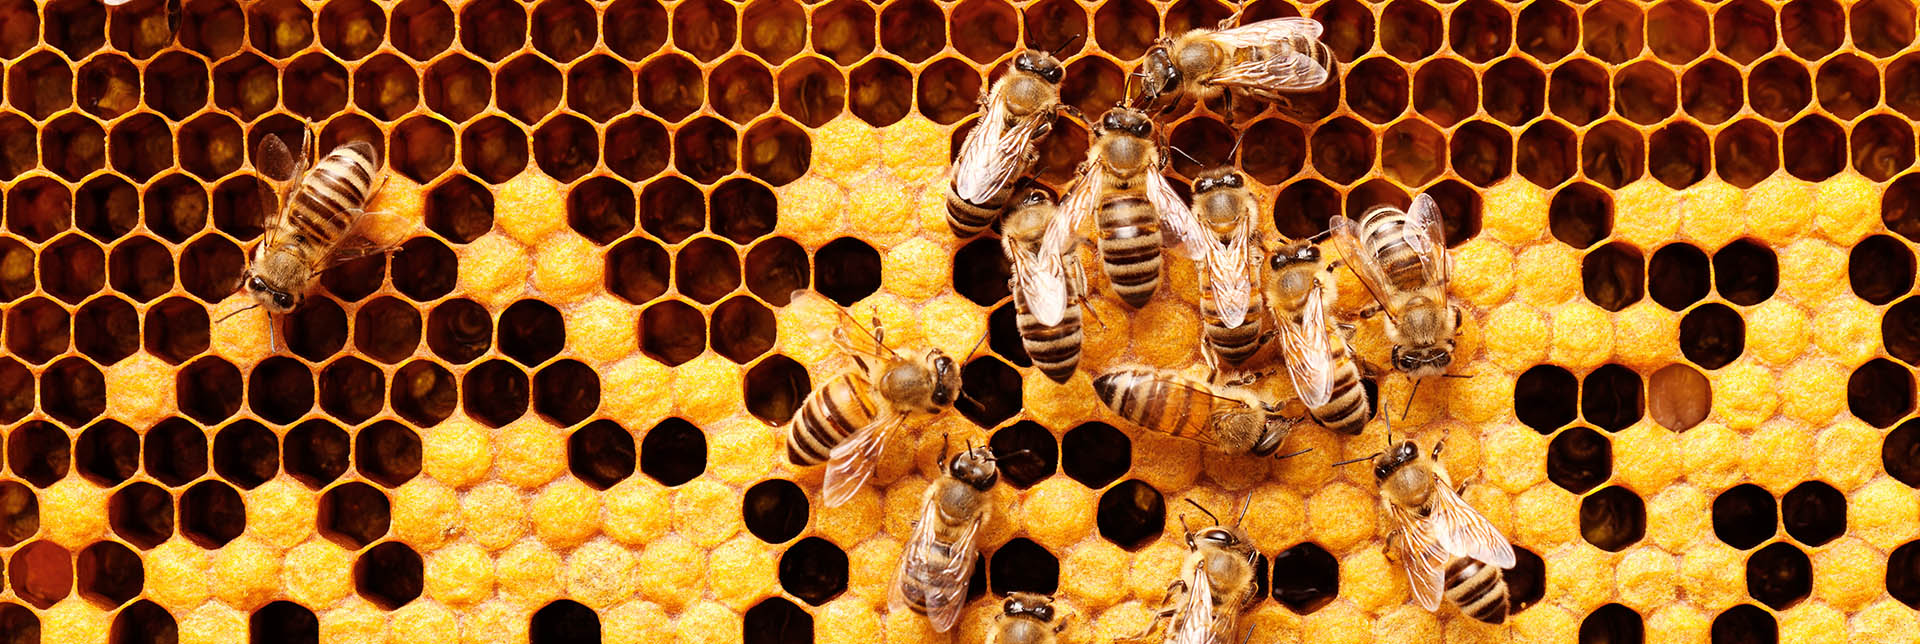 Manuka-Honig und Jarrah-Honig| So werden sie hergestellt